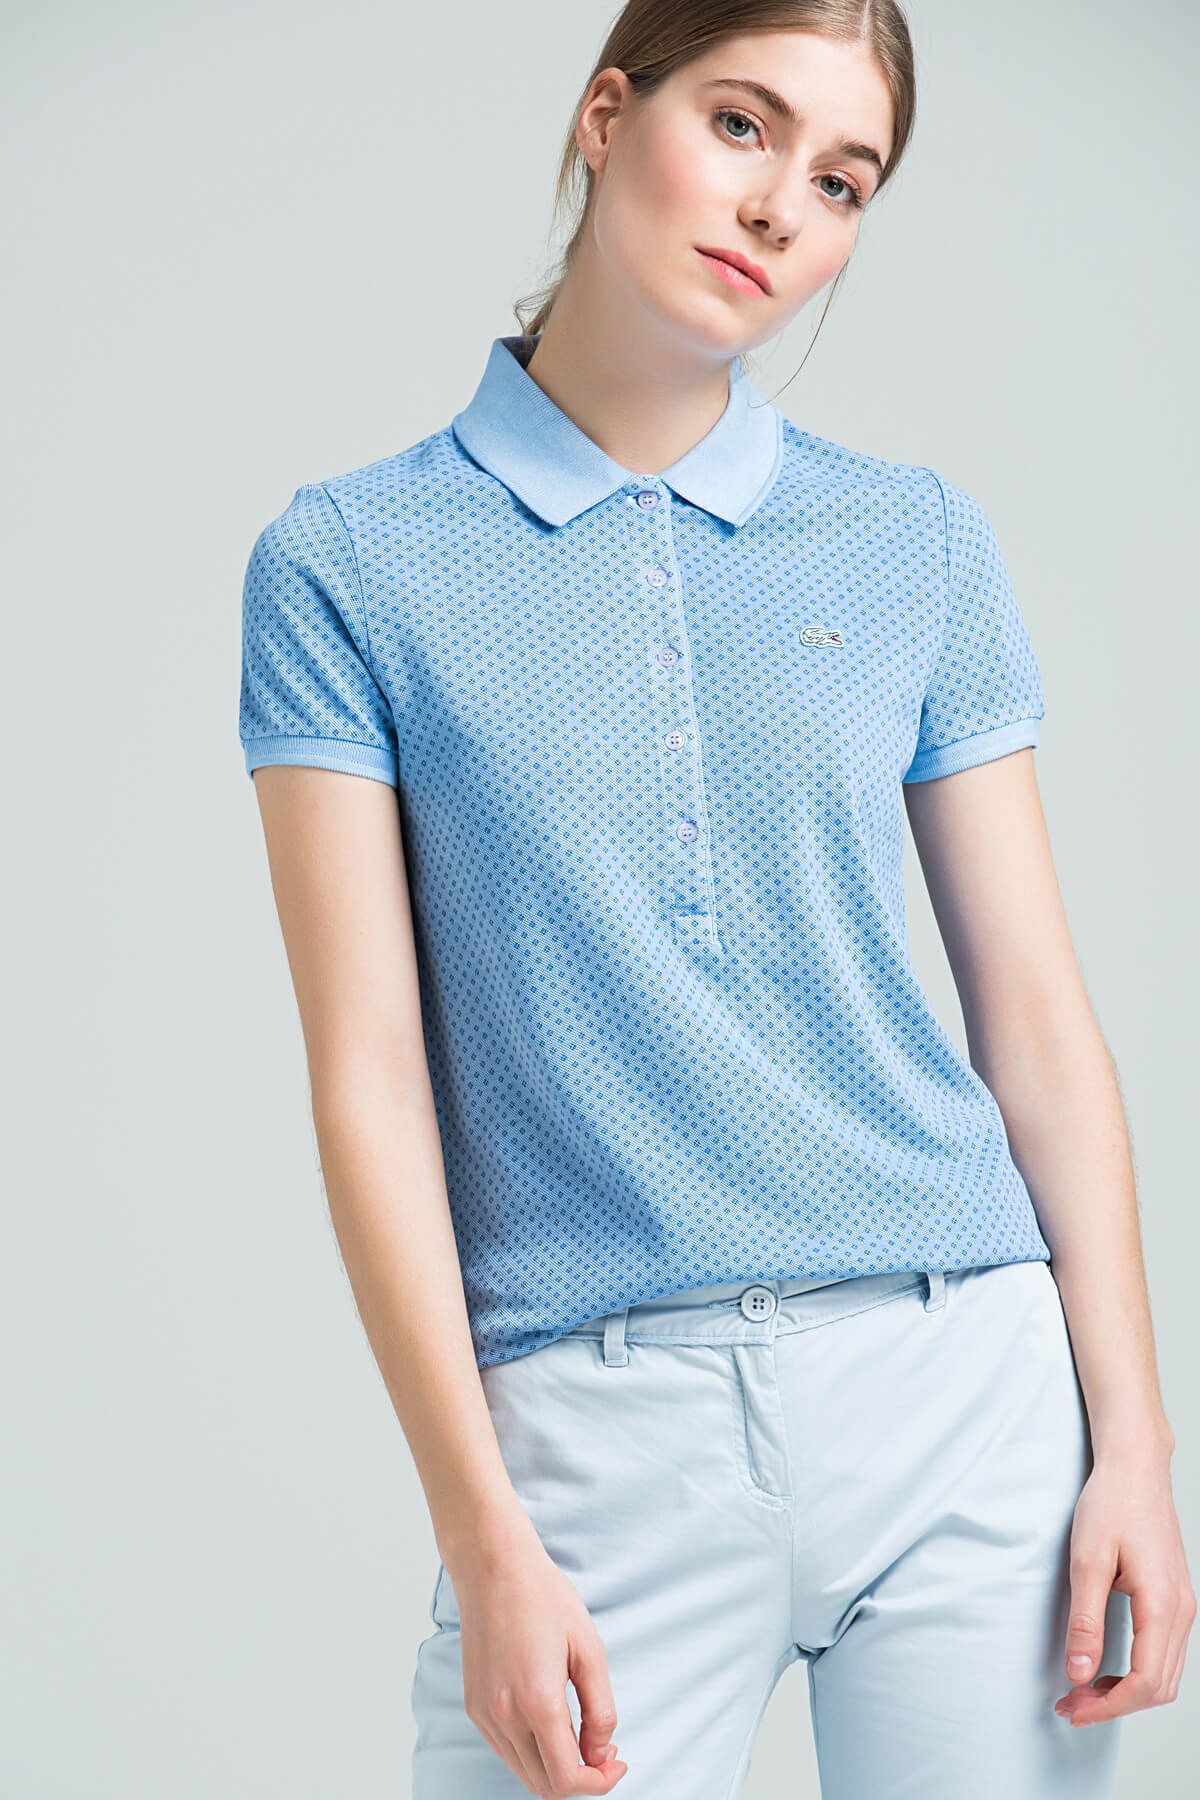 Lacoste Kadın Mavi Polo Yaka T-shirt PF0699